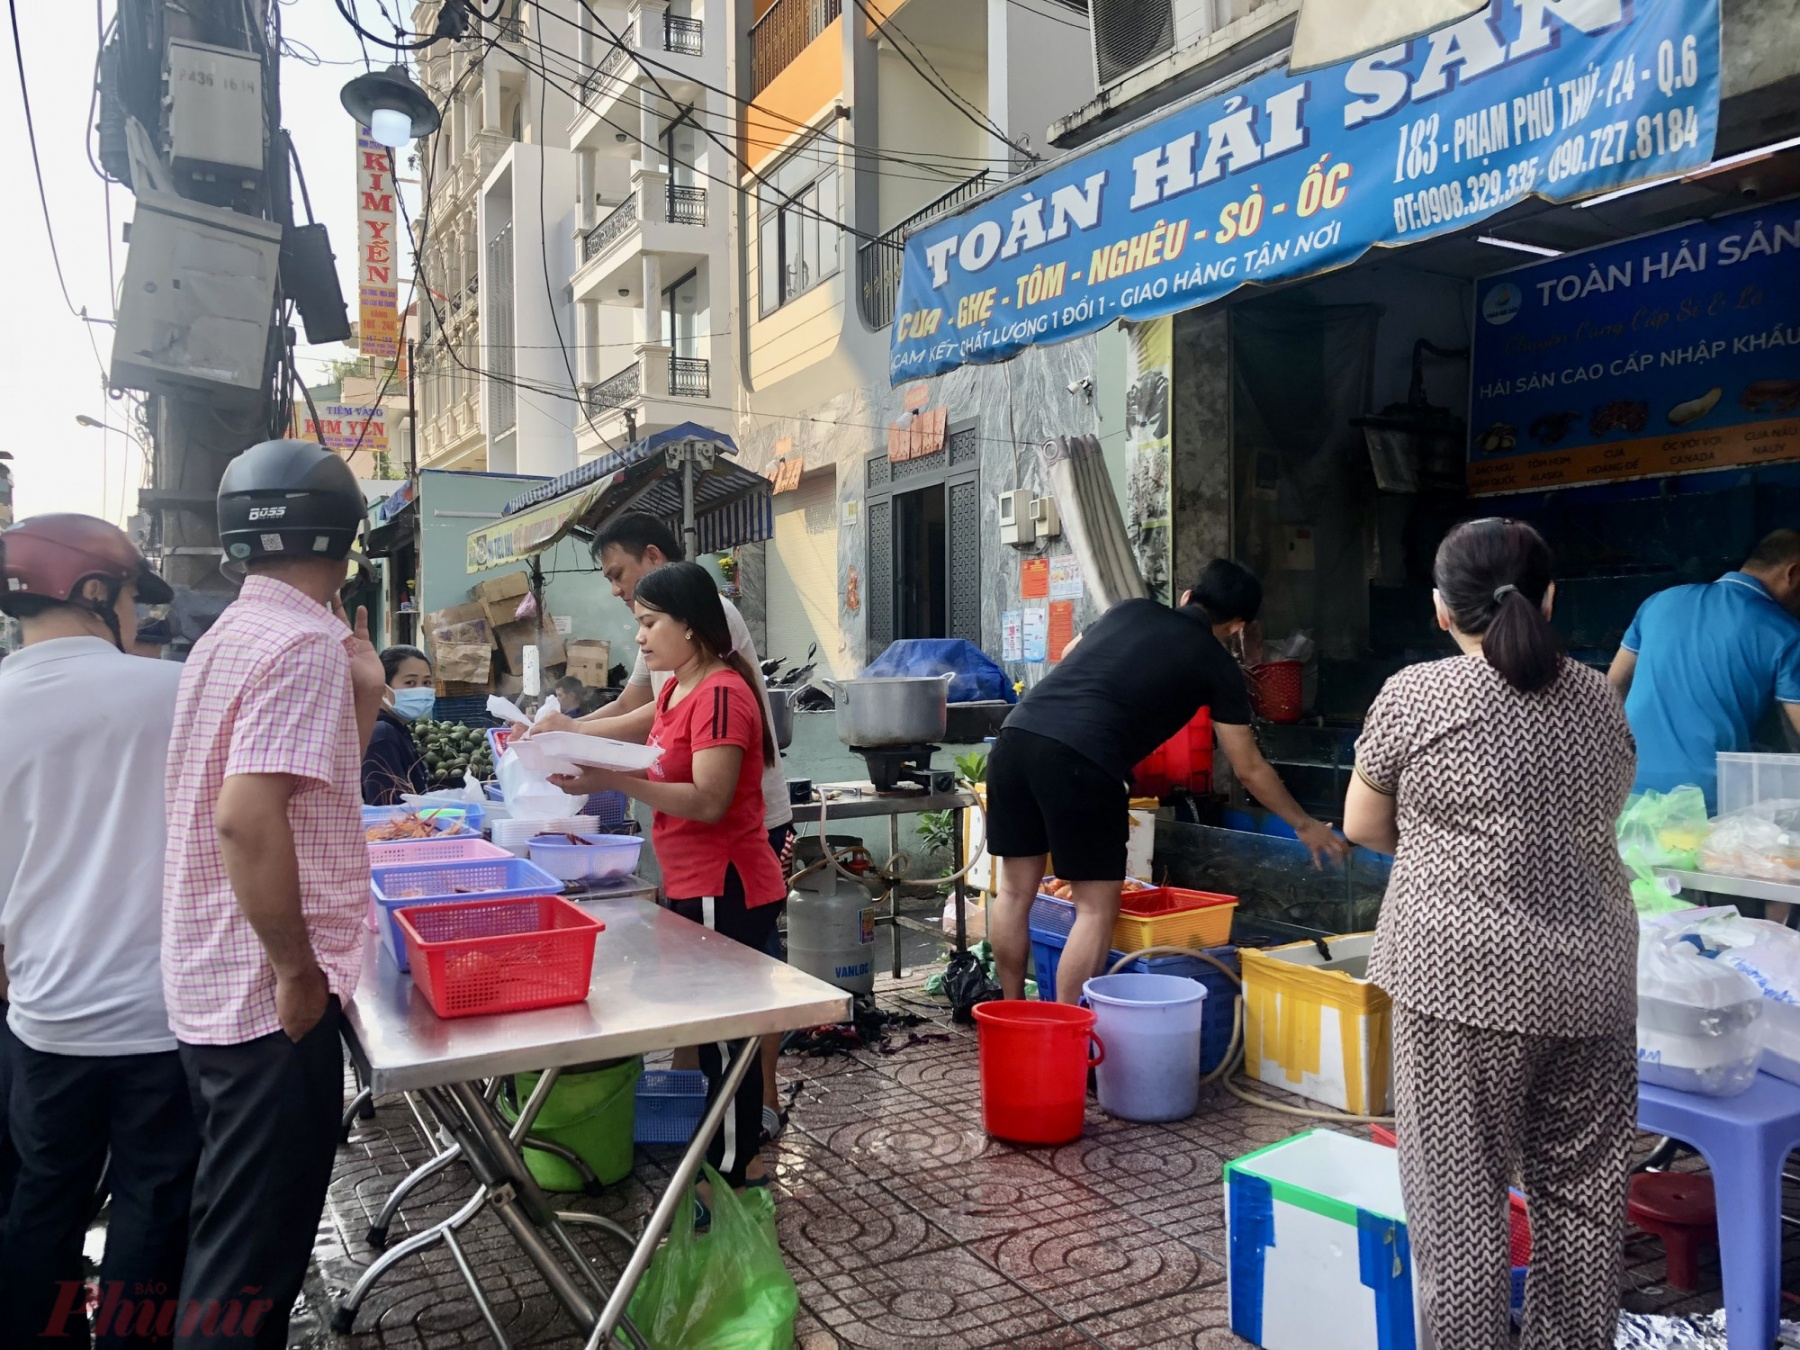 Các cửa hàng kinh doanh hải sản tươi sống trên đường Phạm Phú Thứ cũng tranh thủ bắt tôm, cua, trứng đem luộc rồi bán cho khách - Ảnh: Thanh Hoa